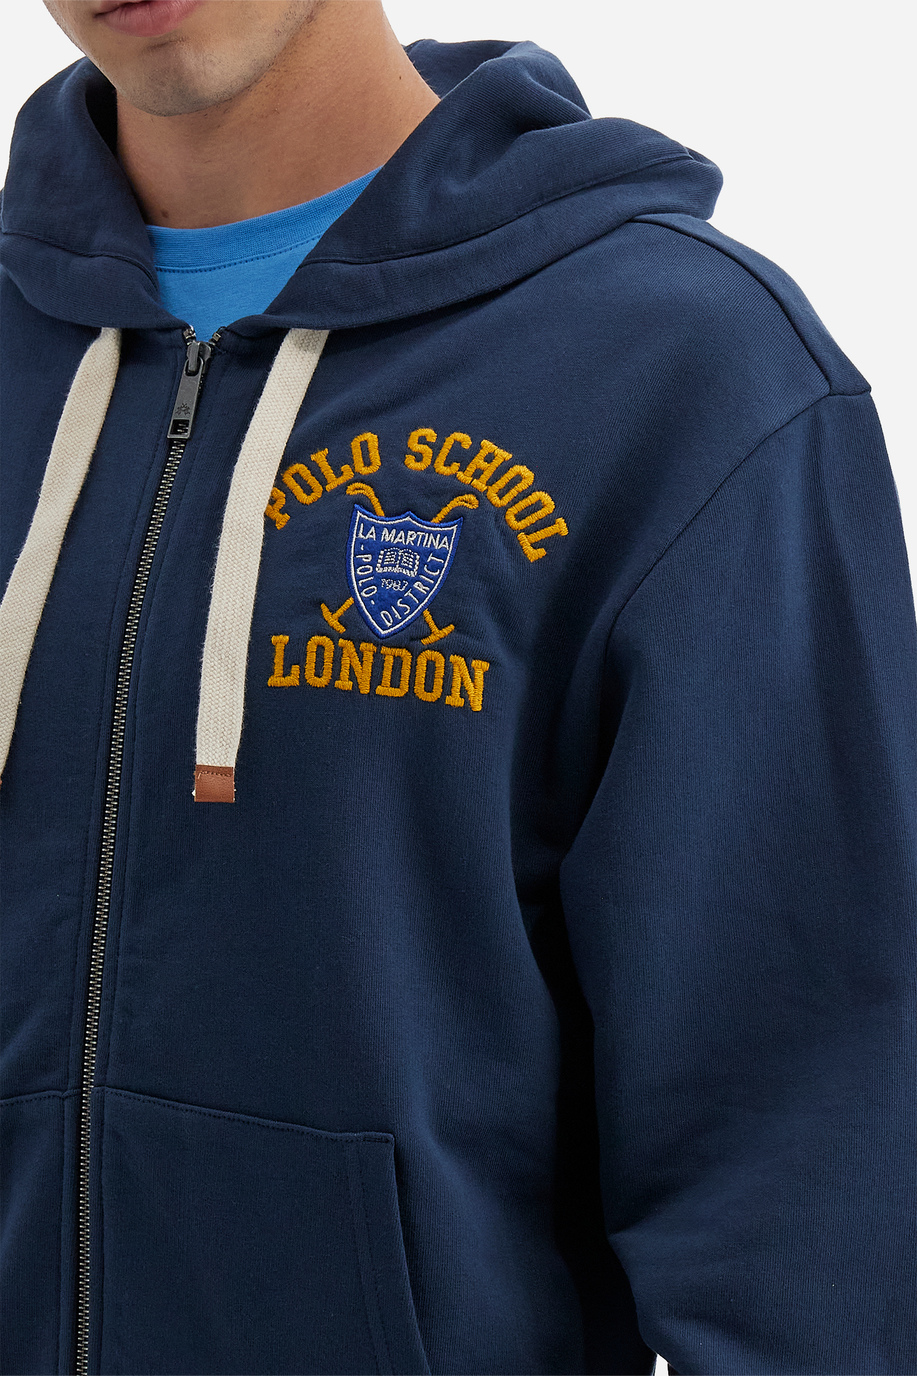 Sweat-shirt à capuche zippé pour homme Polo Academy de couleur unie avec petit logo - Valoris - Sweat-shirts | La Martina - Official Online Shop